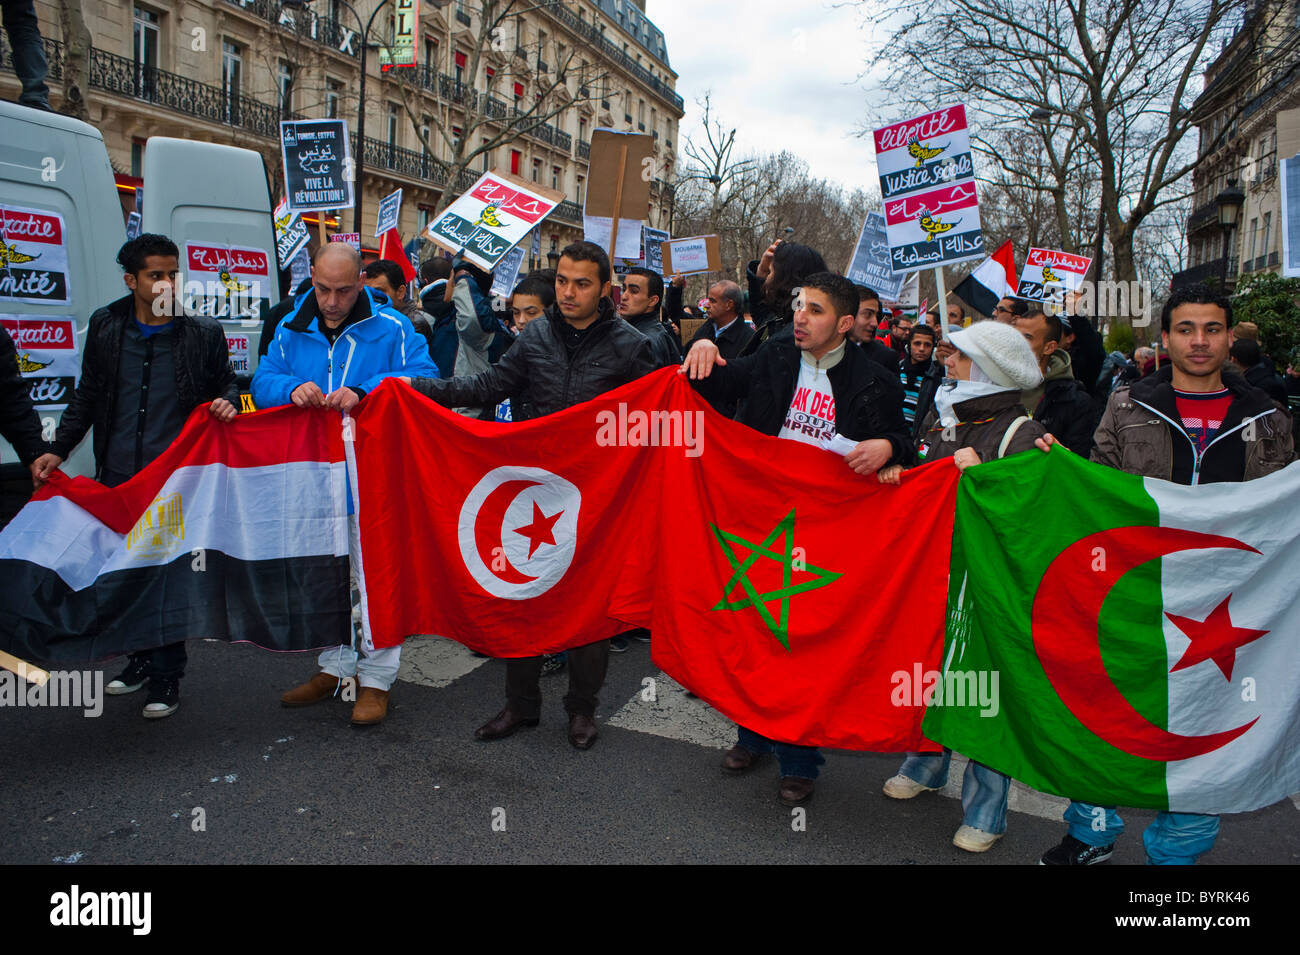 Parigi, Francia, Egitto e altri paesi arabi i manifestanti di bandiere protestano contro Hosni Mubarak, fuori, Street "Arab Spring" con cartelli di protesta, bandiere internazionali, immigrati africani che marciano in strada Foto Stock